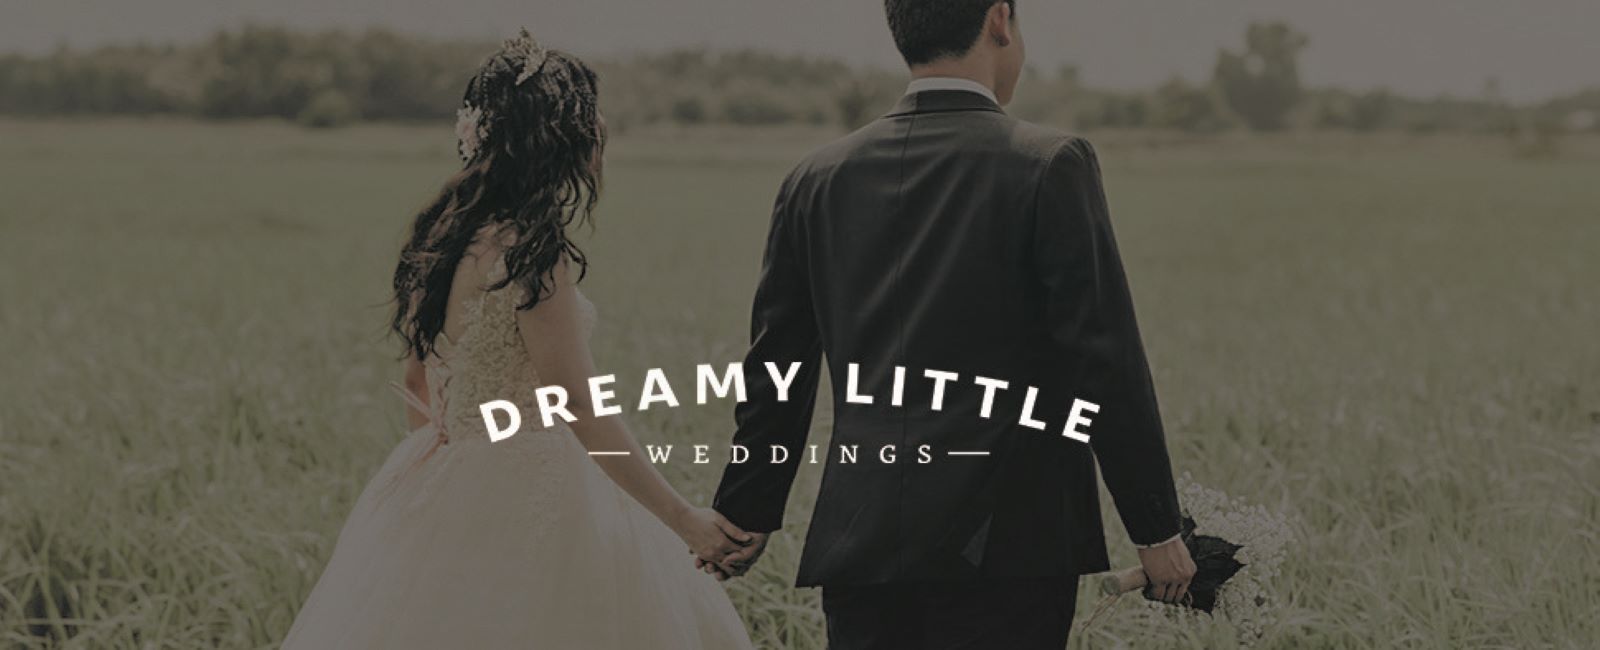 Pop Up Weddings - Dreamy Little